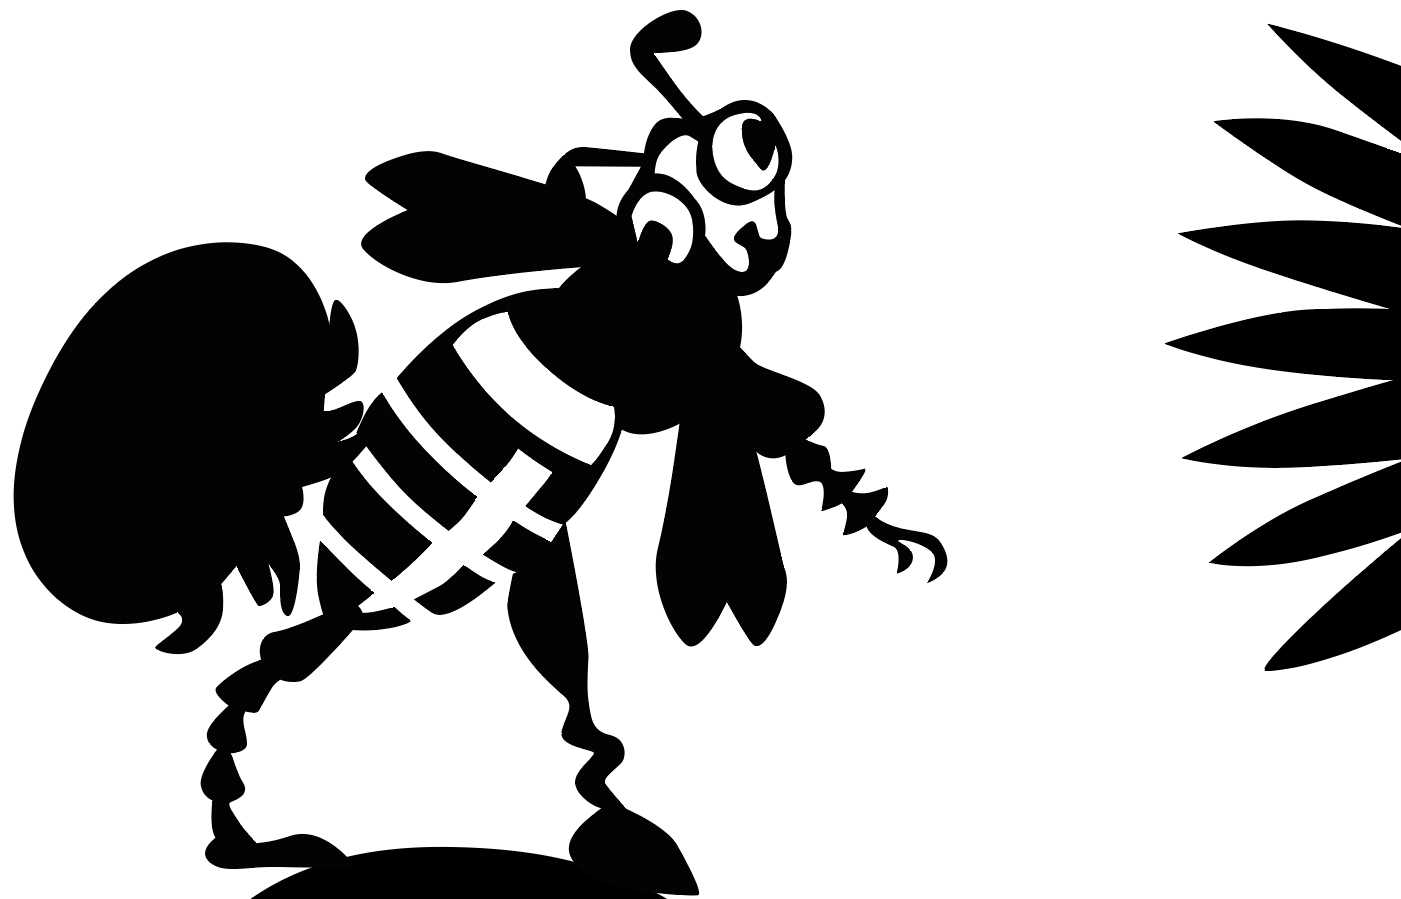 Biene mit Varroamilbe auf dem Rücken